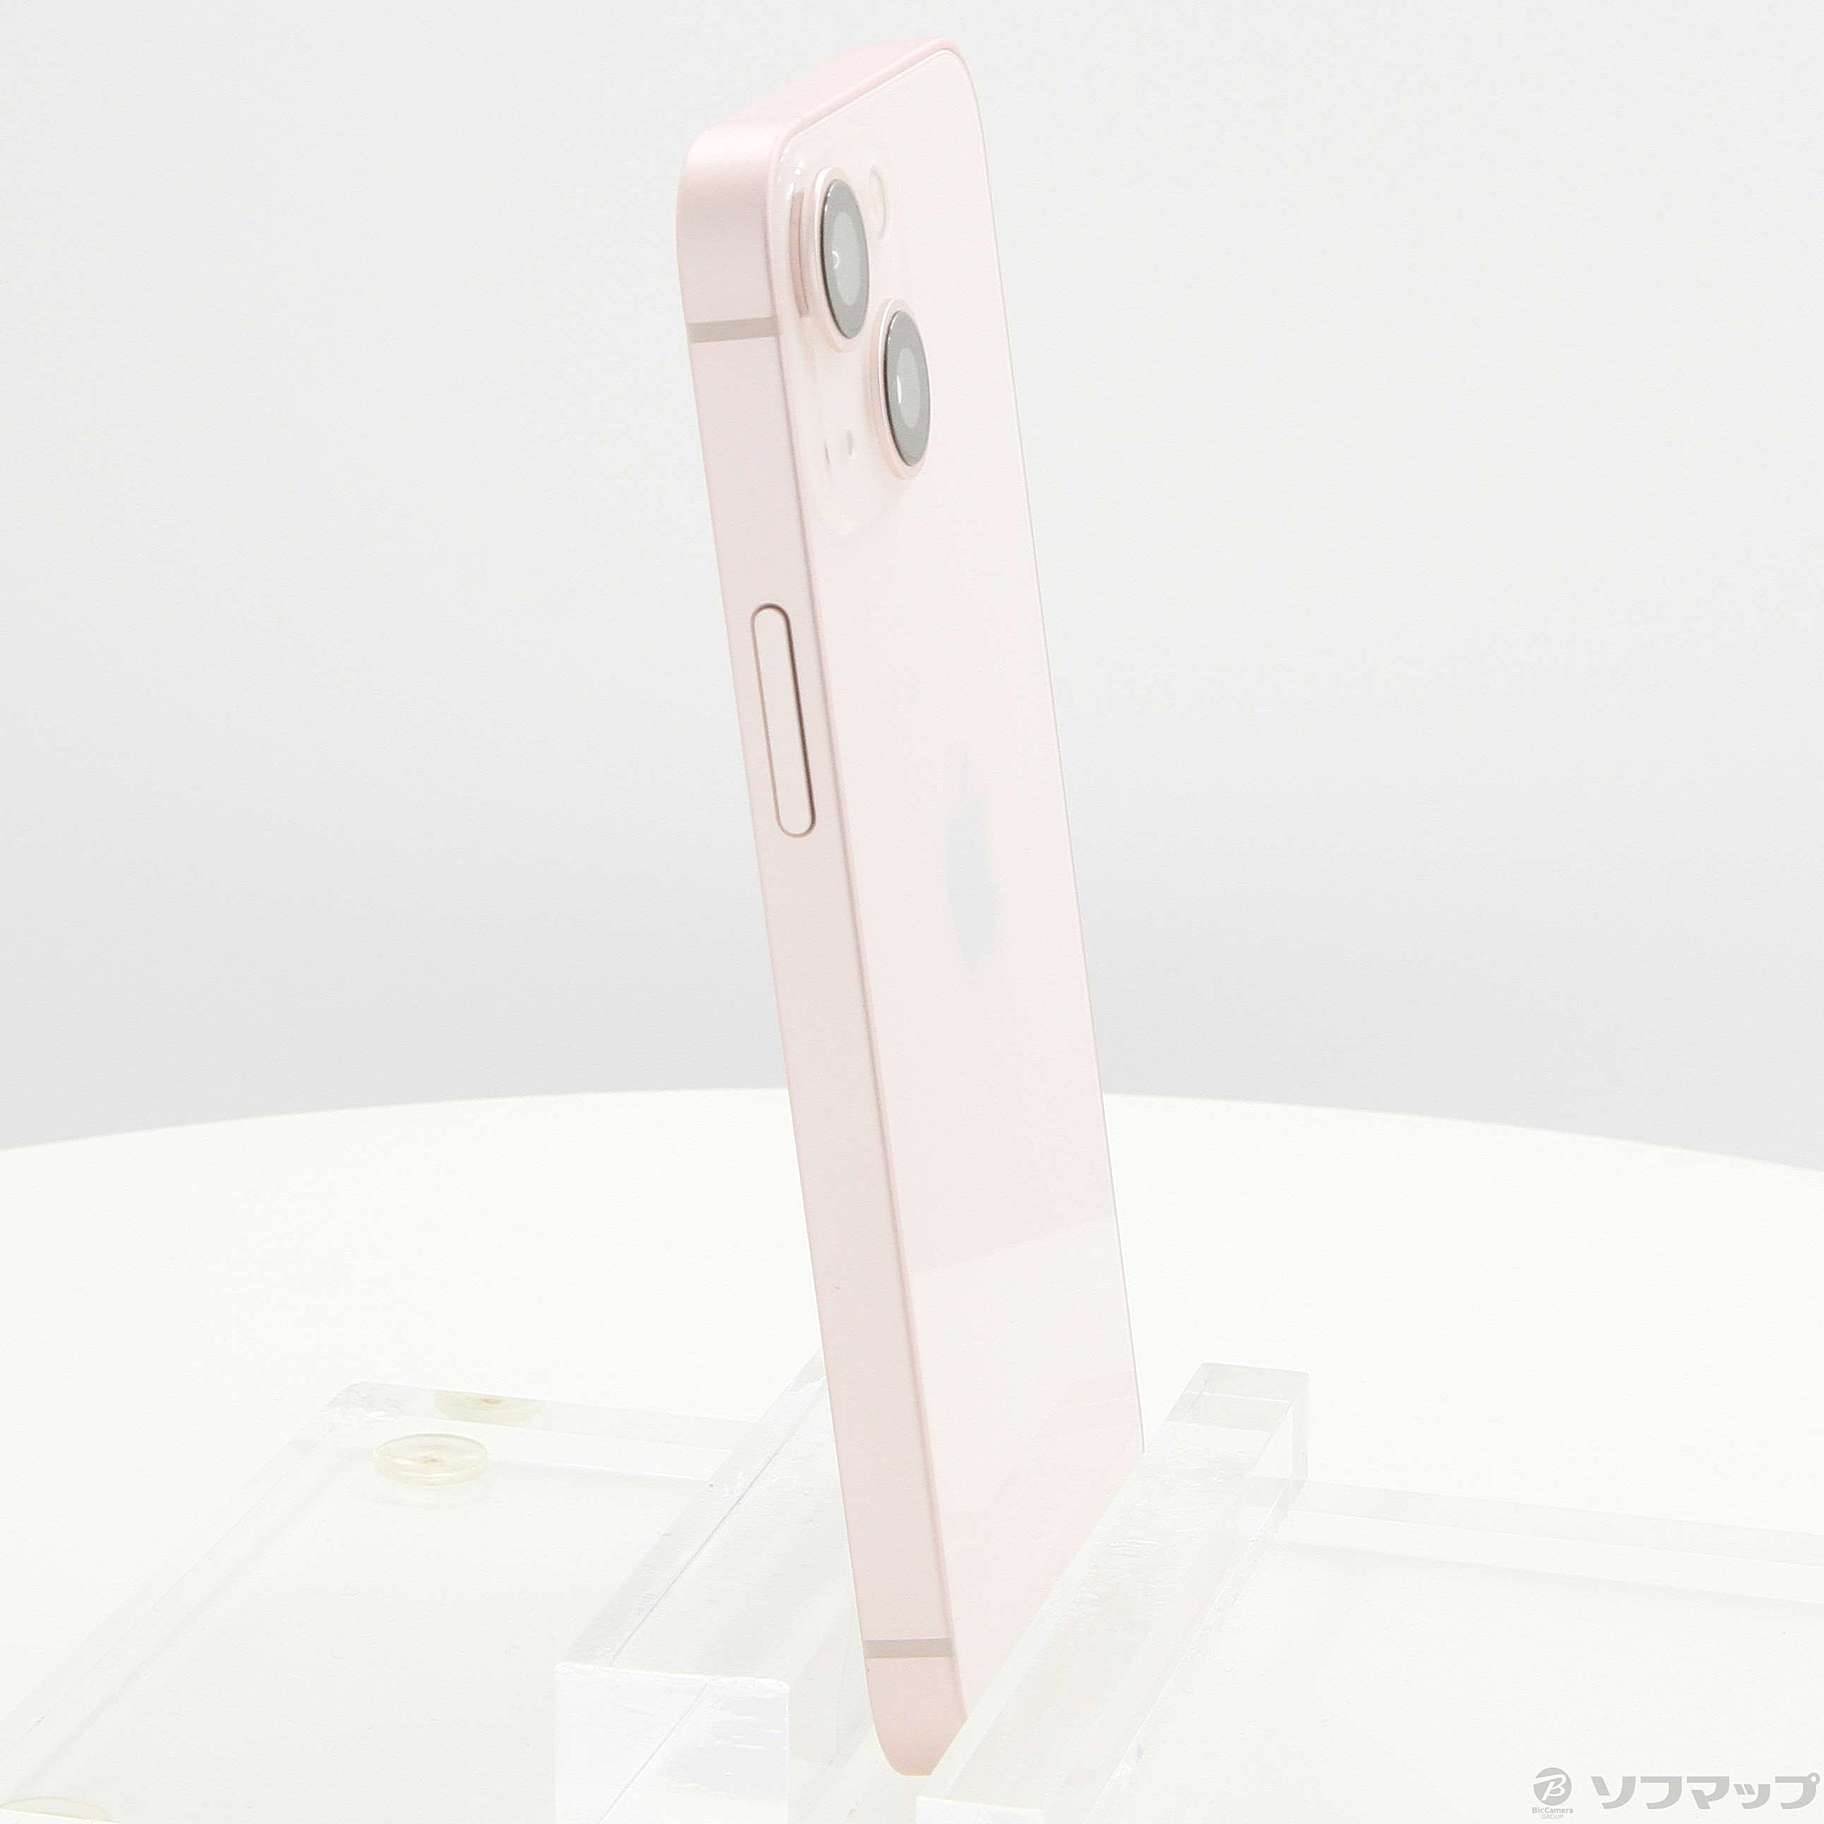 【新品未使用】iPhone13 mini 128GB ピンク